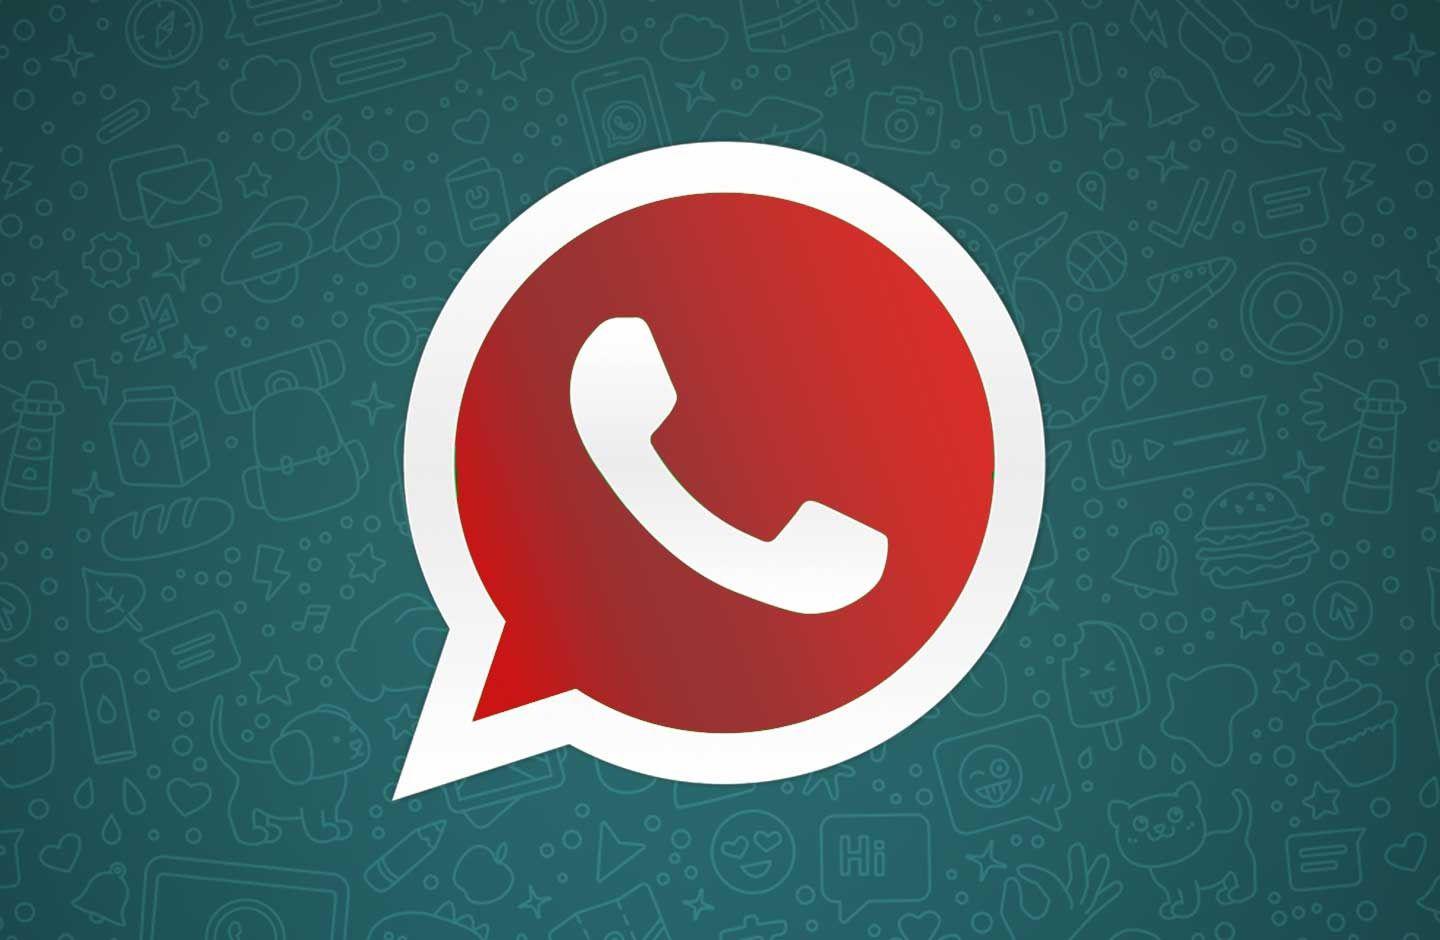 WhatsApp Plus Rojo- Coacutemo descargarlo y conseguir nuevas funciones